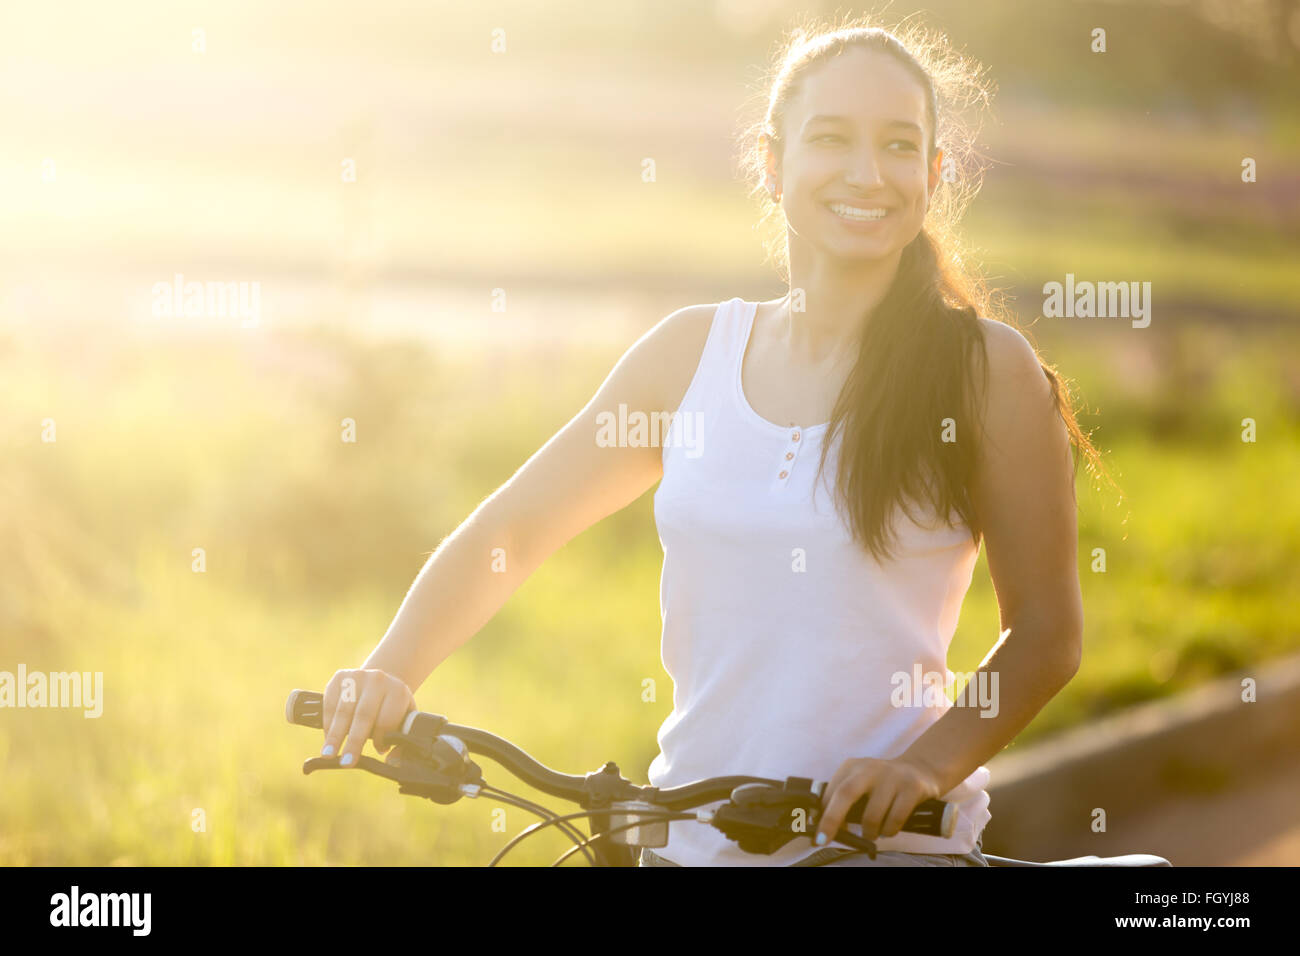 Ritratto di ridere giovani asiatici-caucasica modello femminile sulla bici di indossare un abbigliamento informale sulla strada luminosa giornata estiva Foto Stock